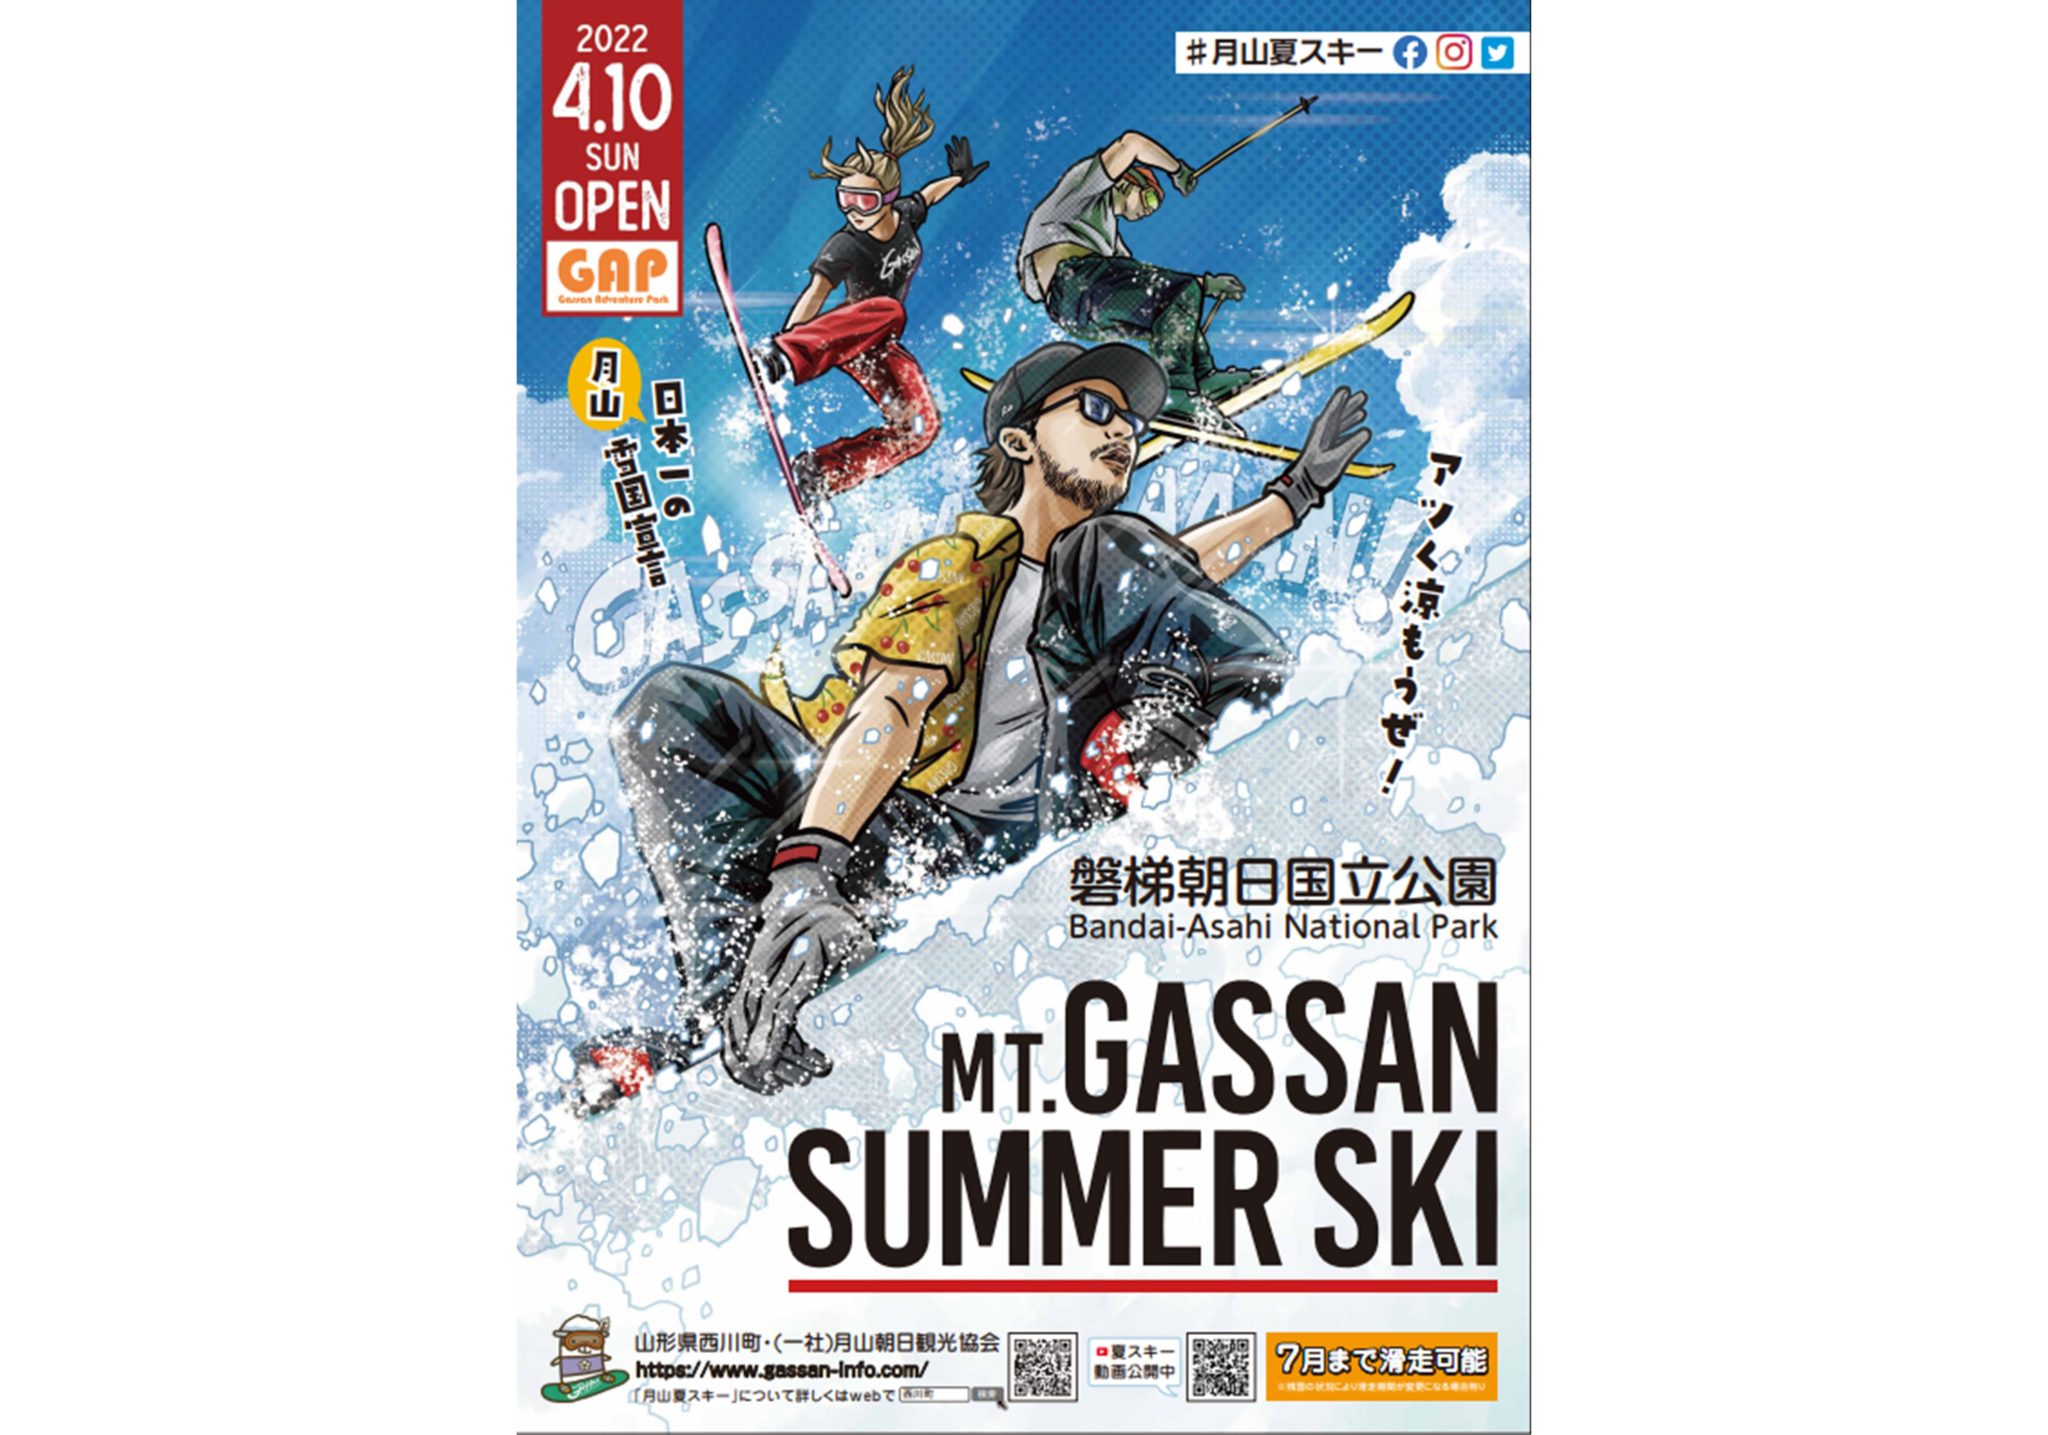 Mt. Gassan Summer Ski (2022)